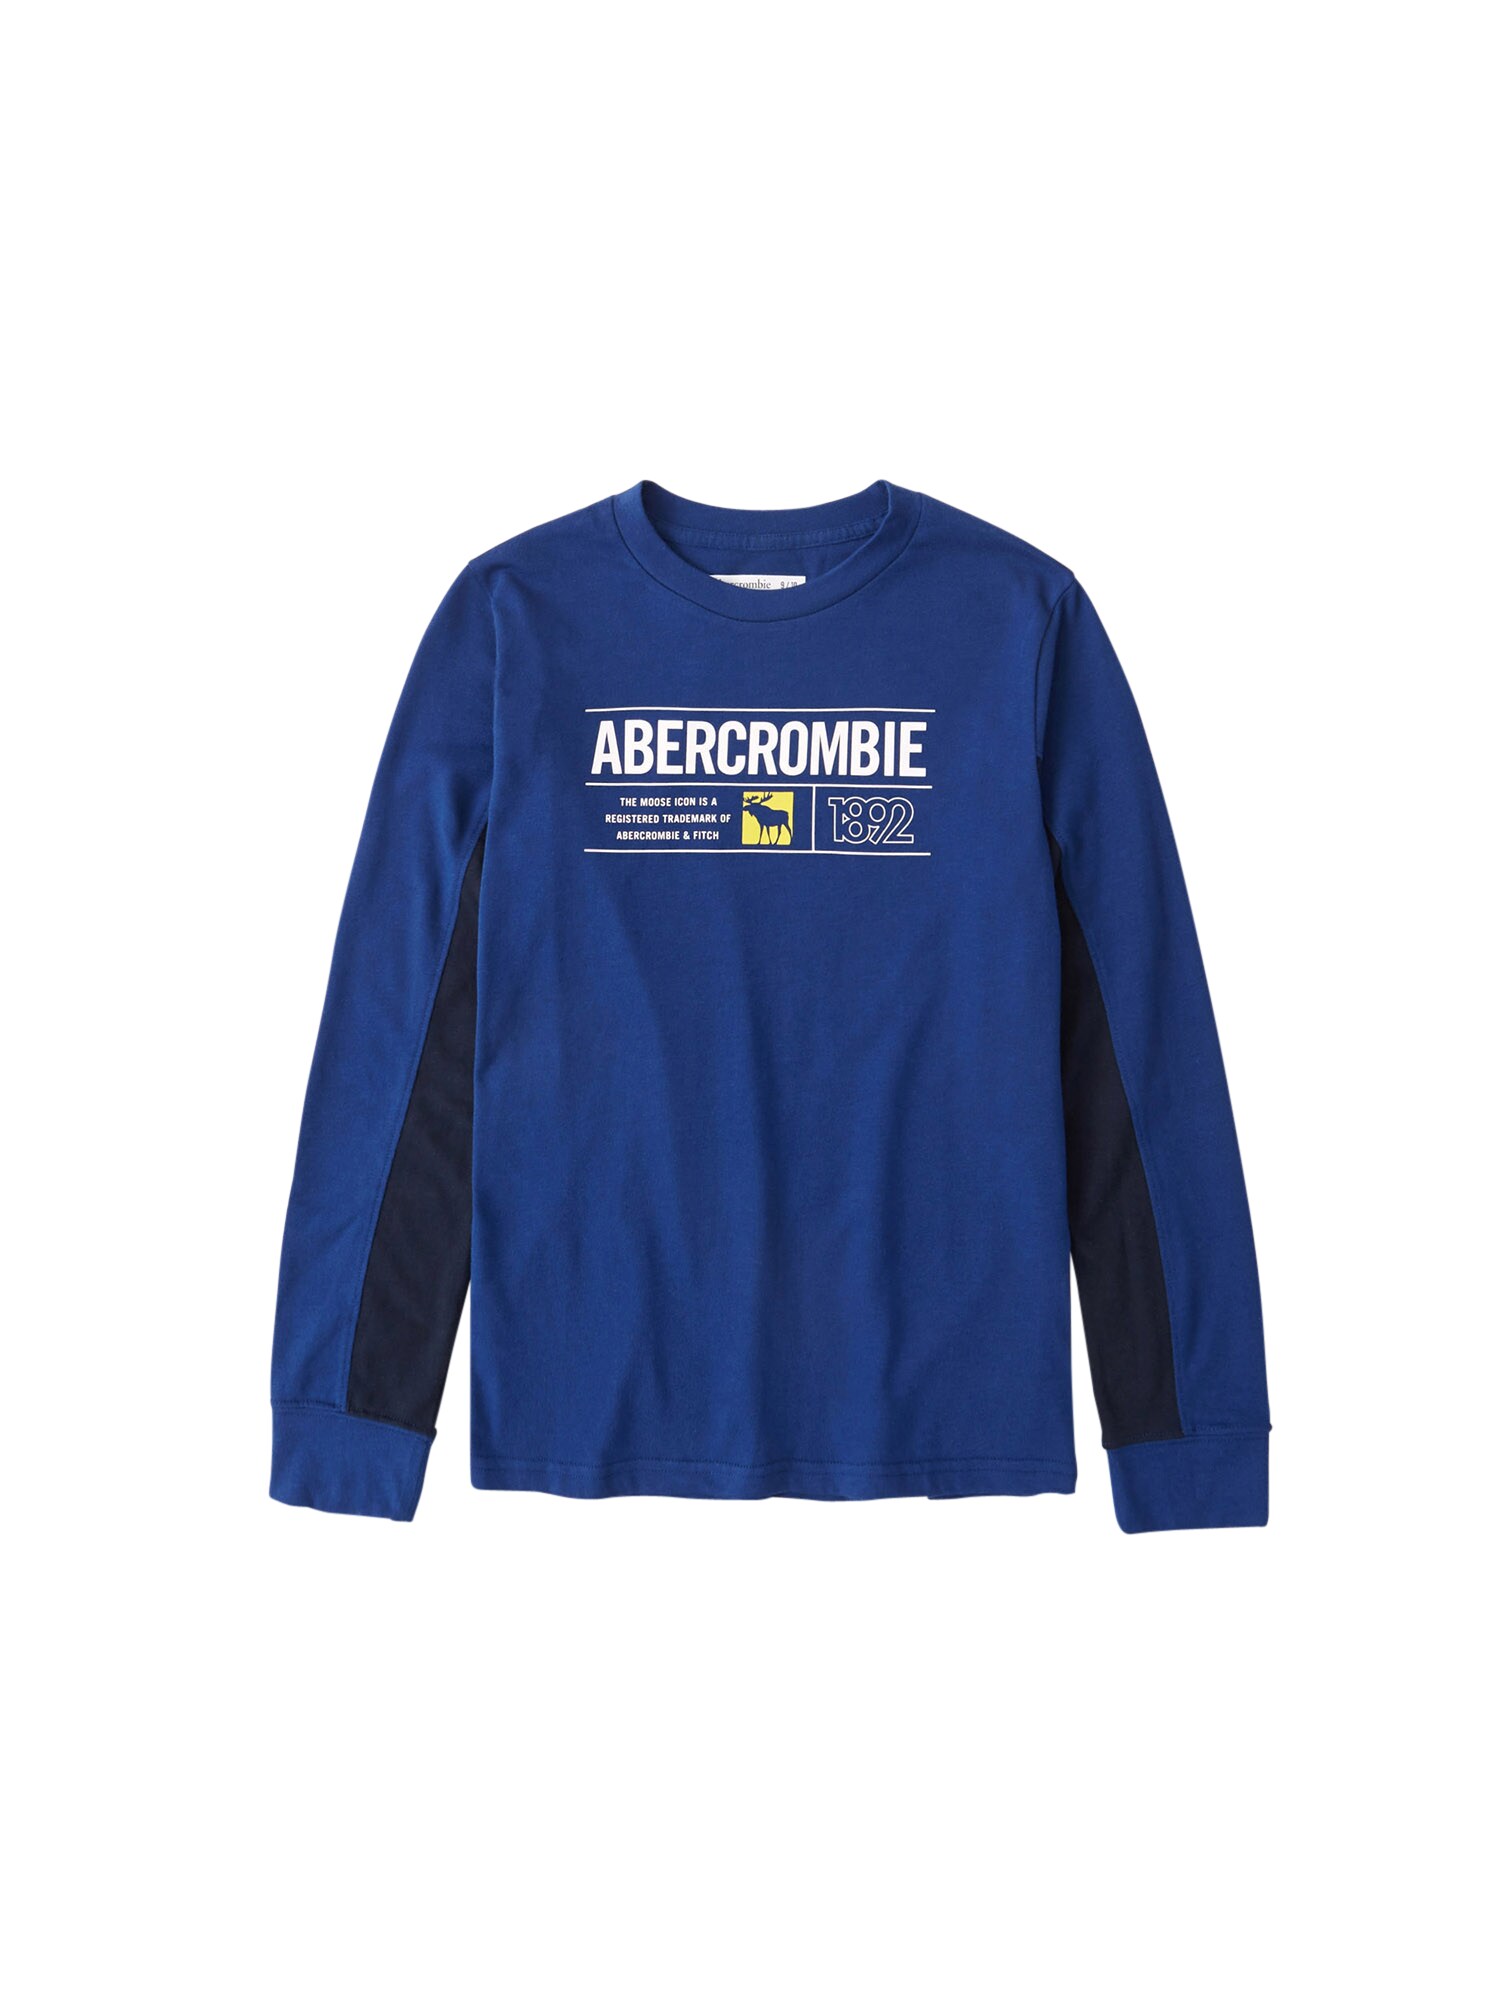 Abercrombie & Fitch Marškinėliai  mėlyna / tamsiai mėlyna / balta